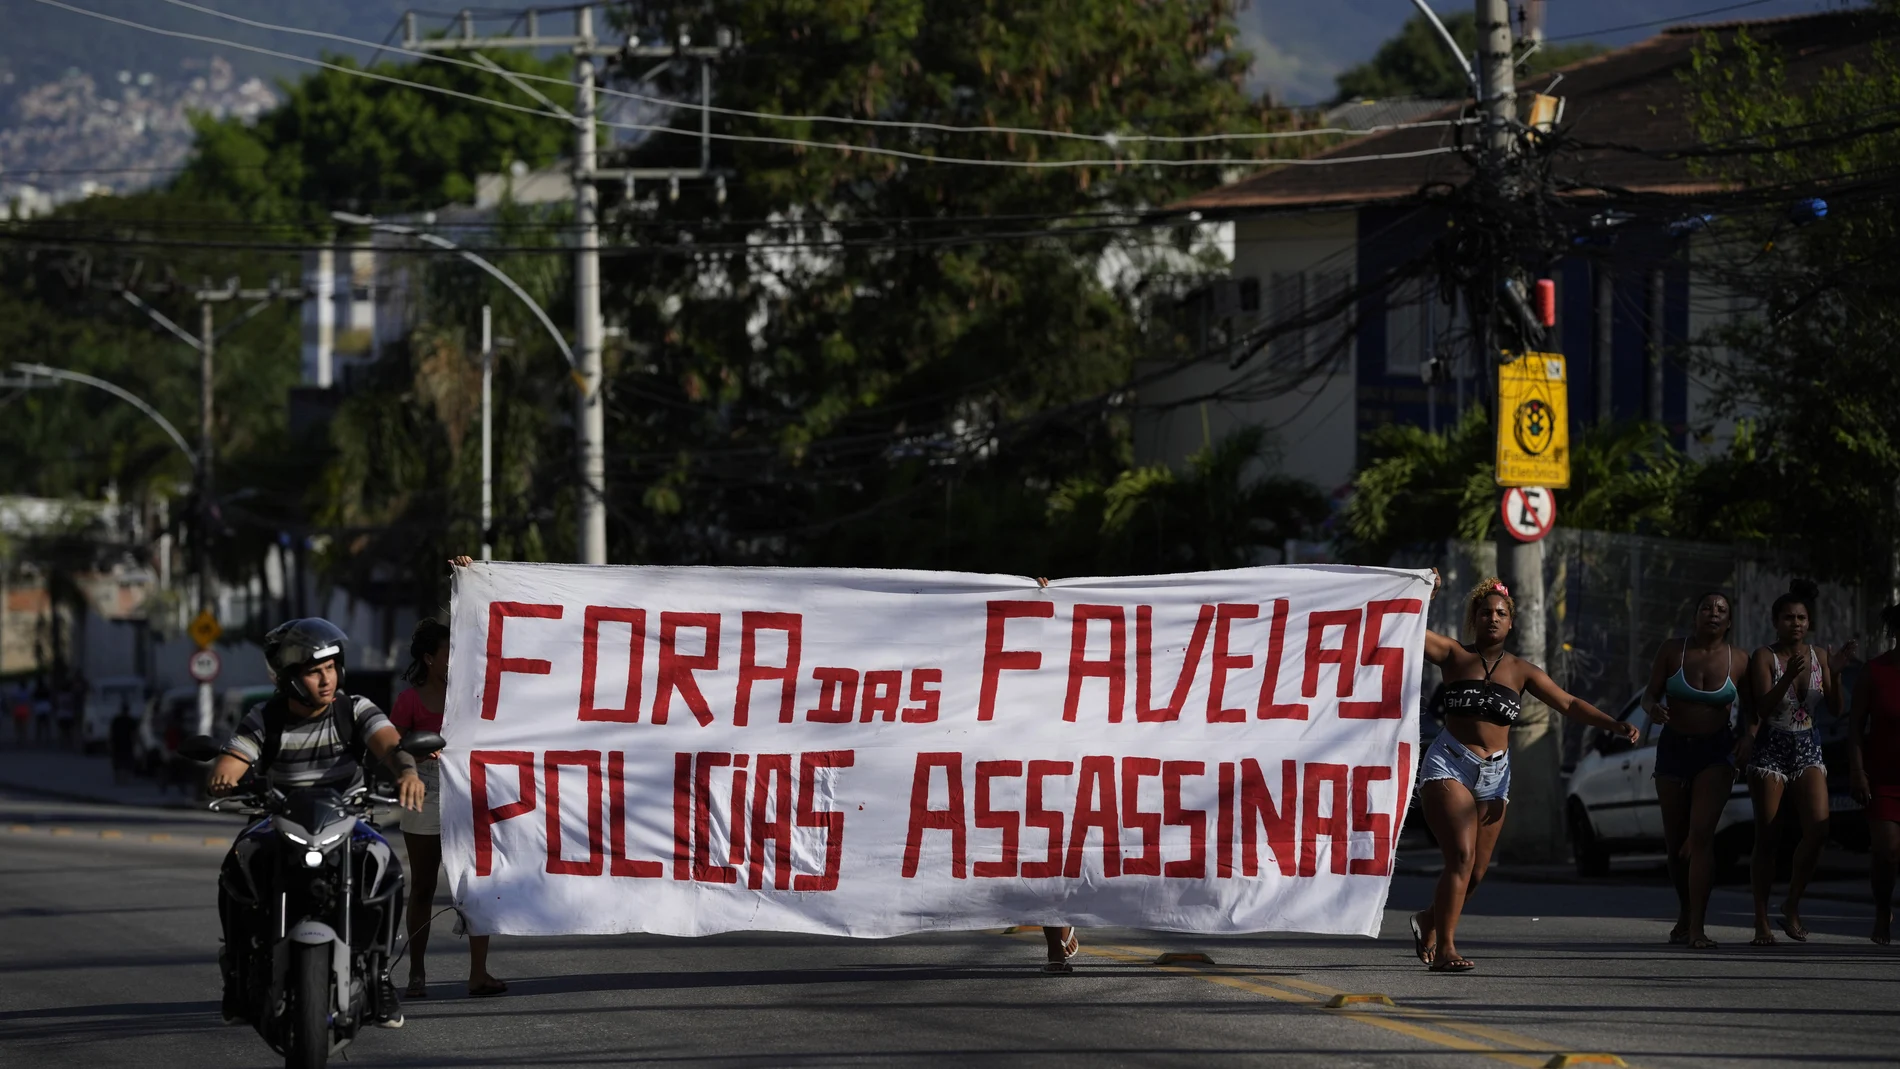 Residentes caminan sosteniendo una pancarta con un mensaje que dice en portugués: "Fuera de la favela policía asesina", luego de una operación policial que resultó en múltiples muertes, en la favela Complexo do Alemao en Río de Janeiro, Brasil, el jueves 21 de julio. 2022. (Foto AP/Silvia Izquierdo)